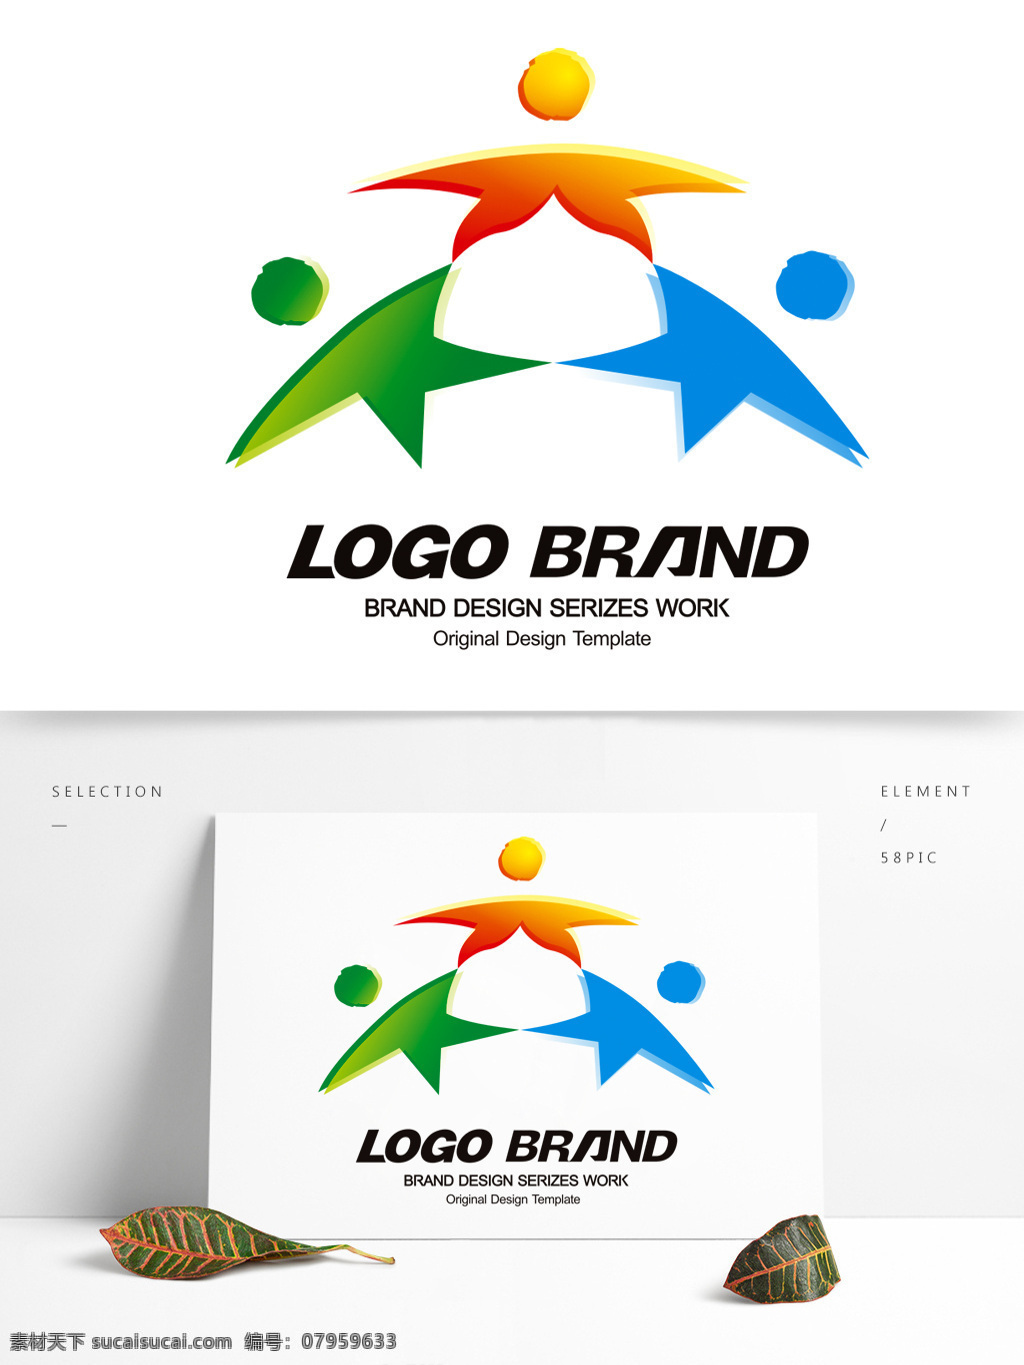 简约 现代 红 蓝绿 星形 公司 标志 logo t 字母 标志设计 x 公司标志设计 企业 会徽标志设计 企业标志设计 手拉手标志